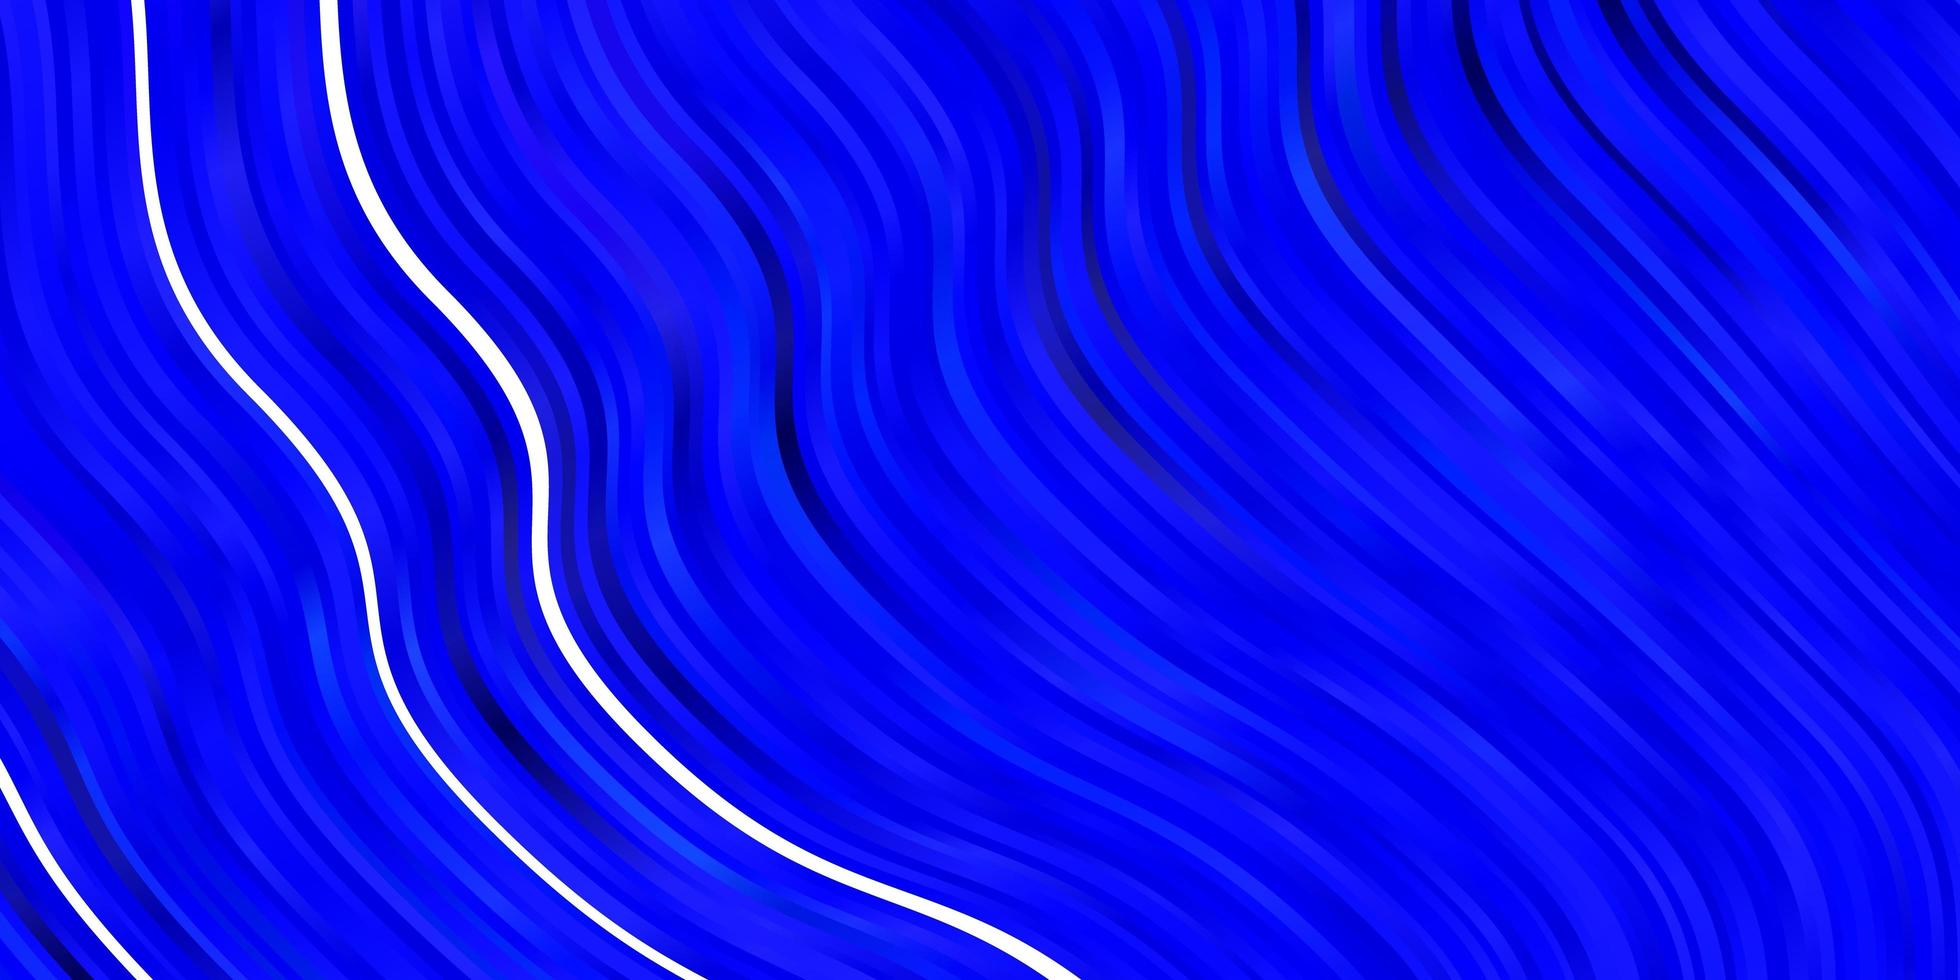 padrão de vetor azul escuro com linhas. ilustração de gradiente em estilo simples com arcos. padrão para anúncios, comerciais.